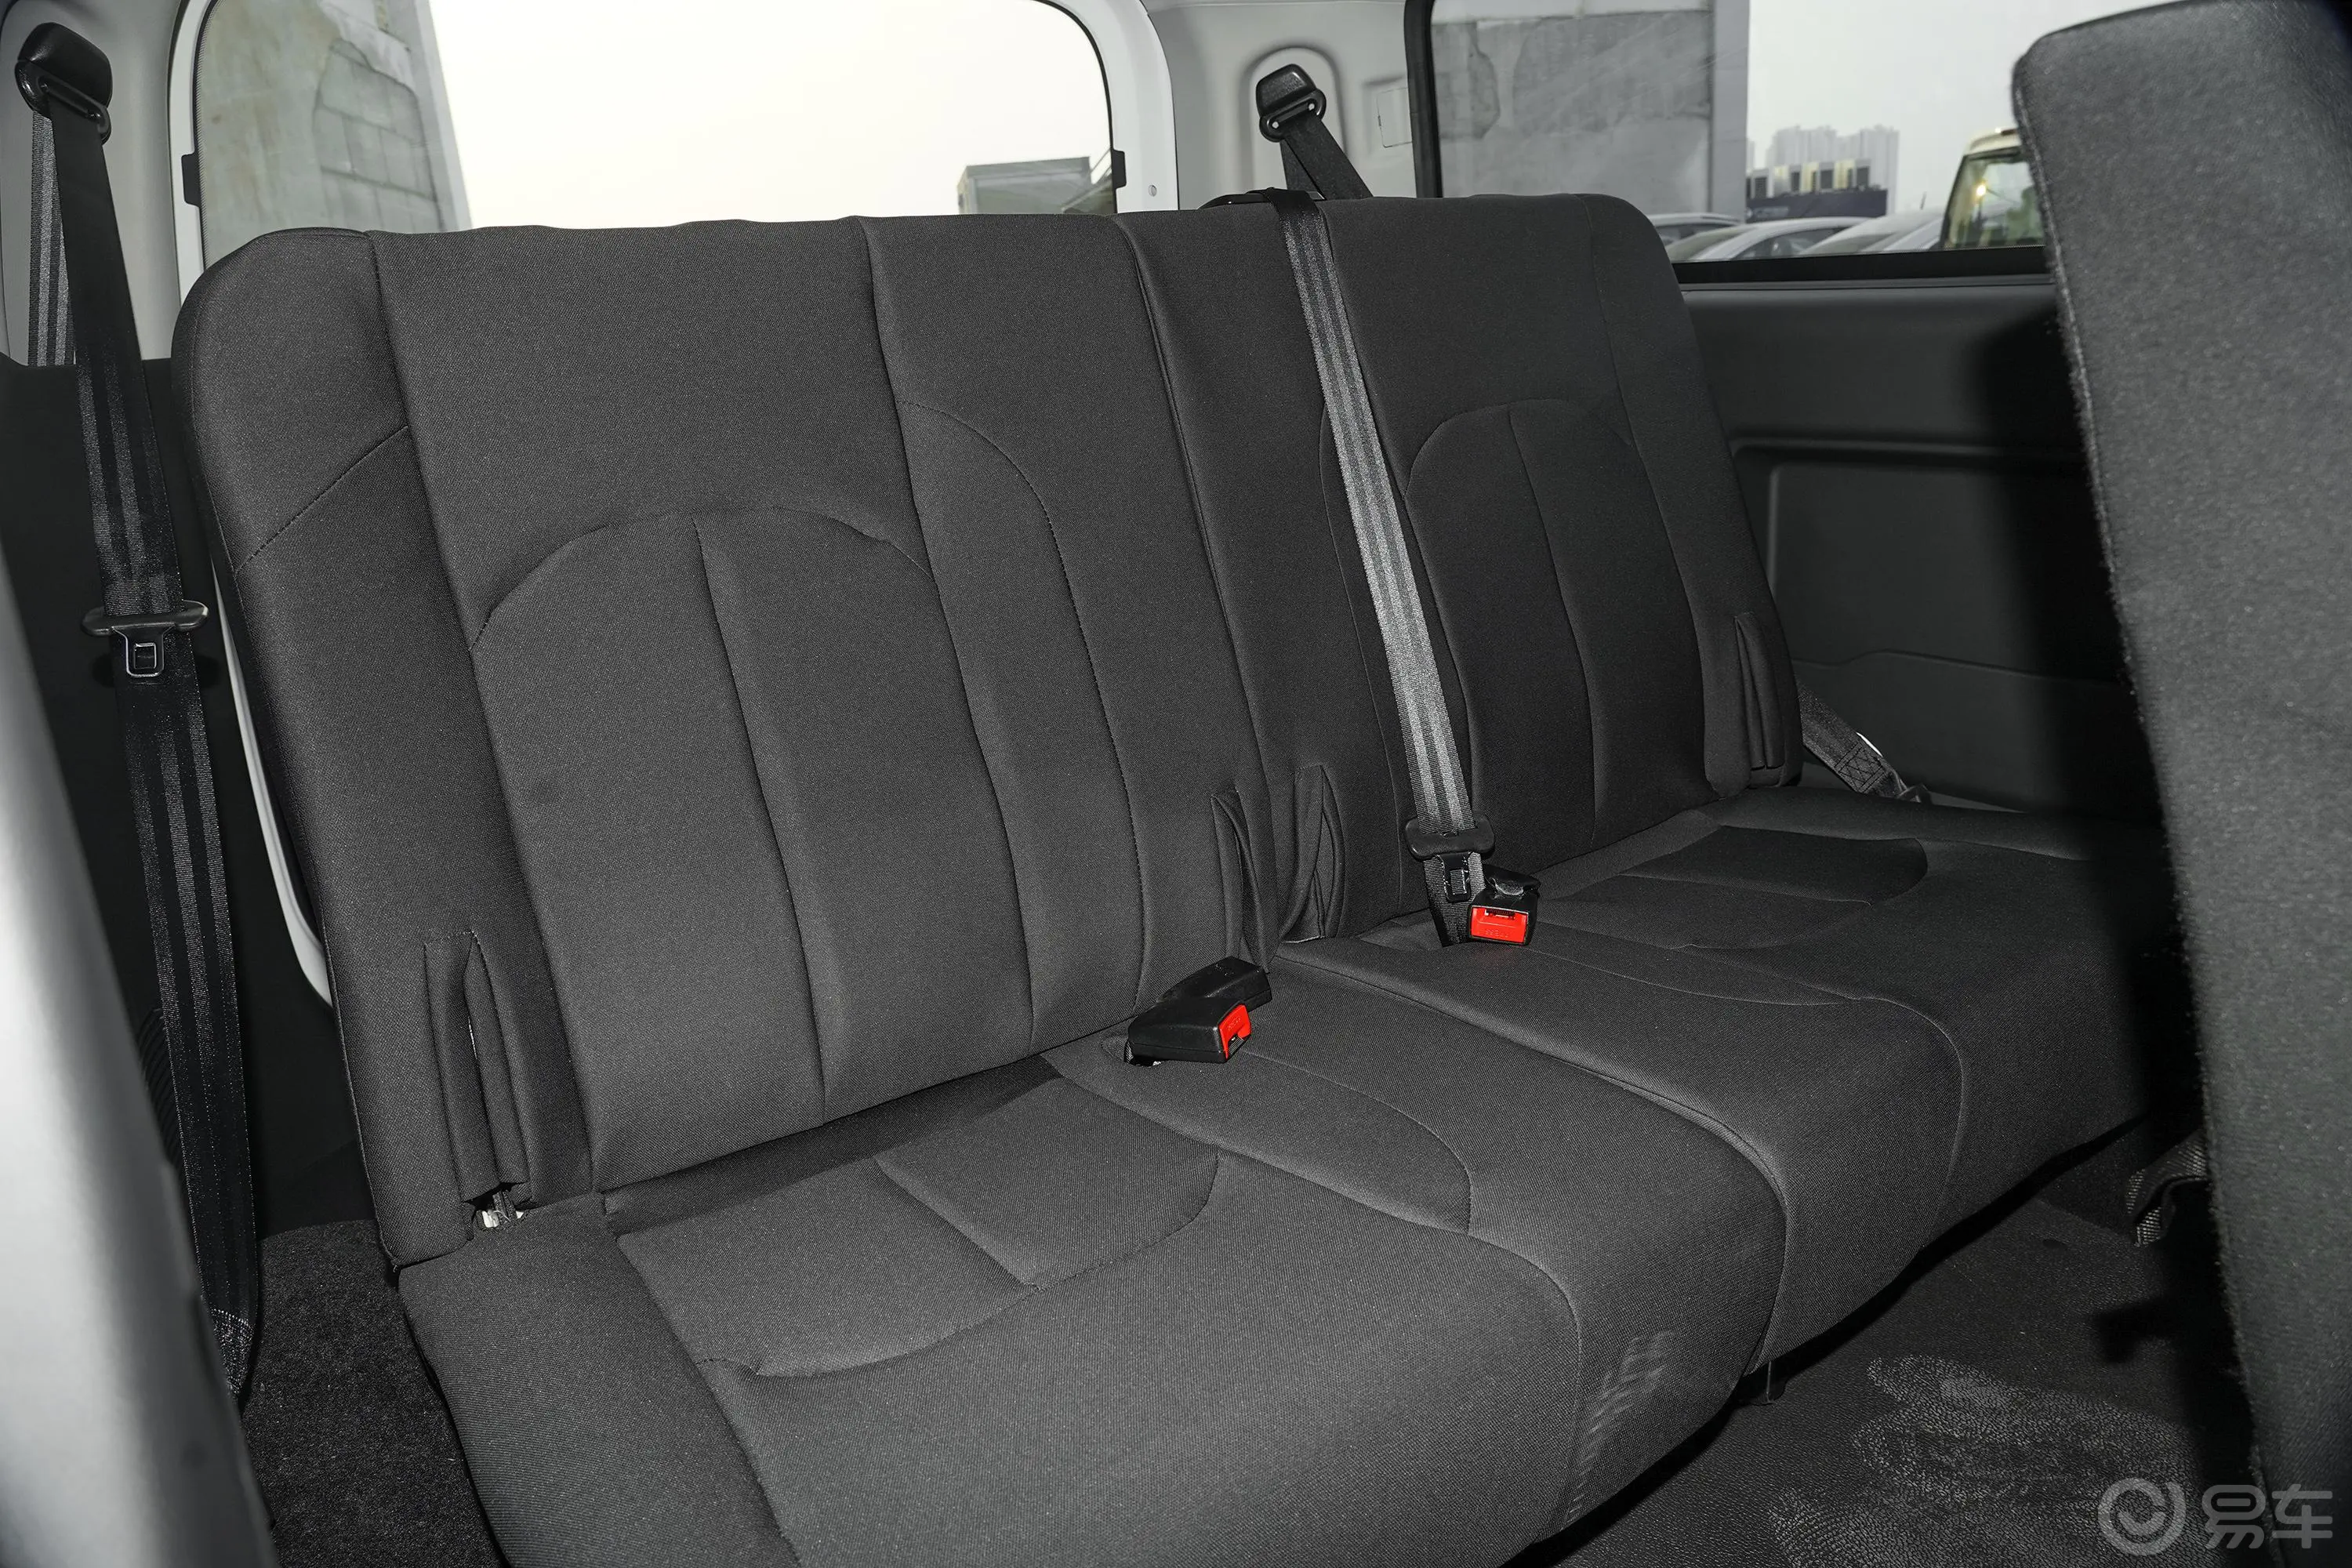 瑞风M3PLUS 宜家高功率版 1.5T 舒适型 7座第三排座椅